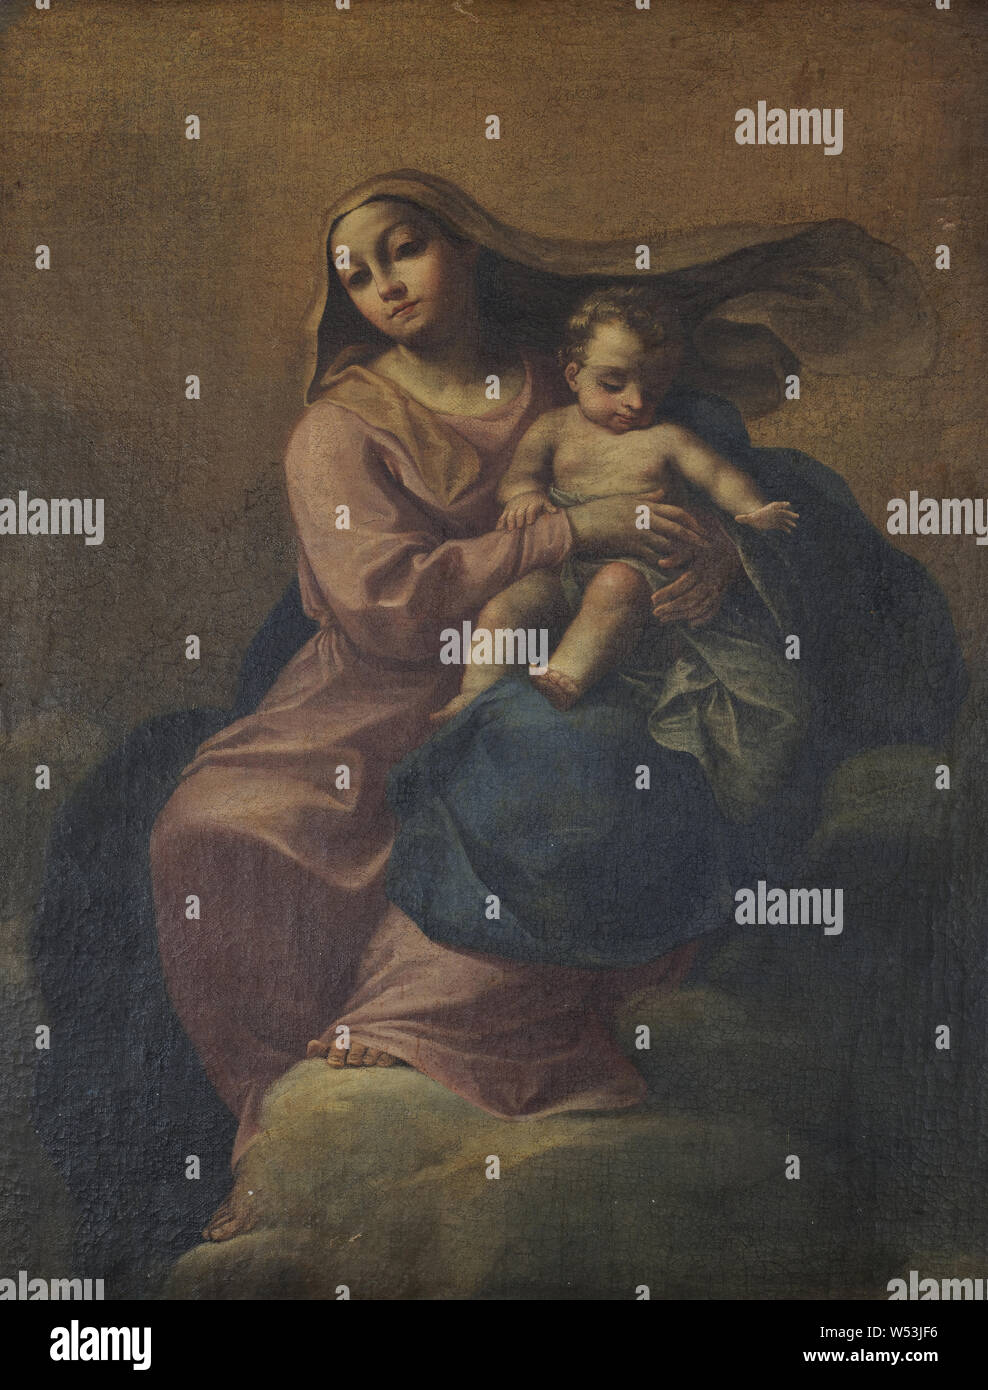 La Madonna e il bambino su una nuvola, Madonna con il bambino su una nuvola, pittura, l'arte religiosa, XVIII secolo, olio su tela, altezza di 95 cm (37,4 pollici), Larghezza 73 cm (28,7 pollici) Foto Stock